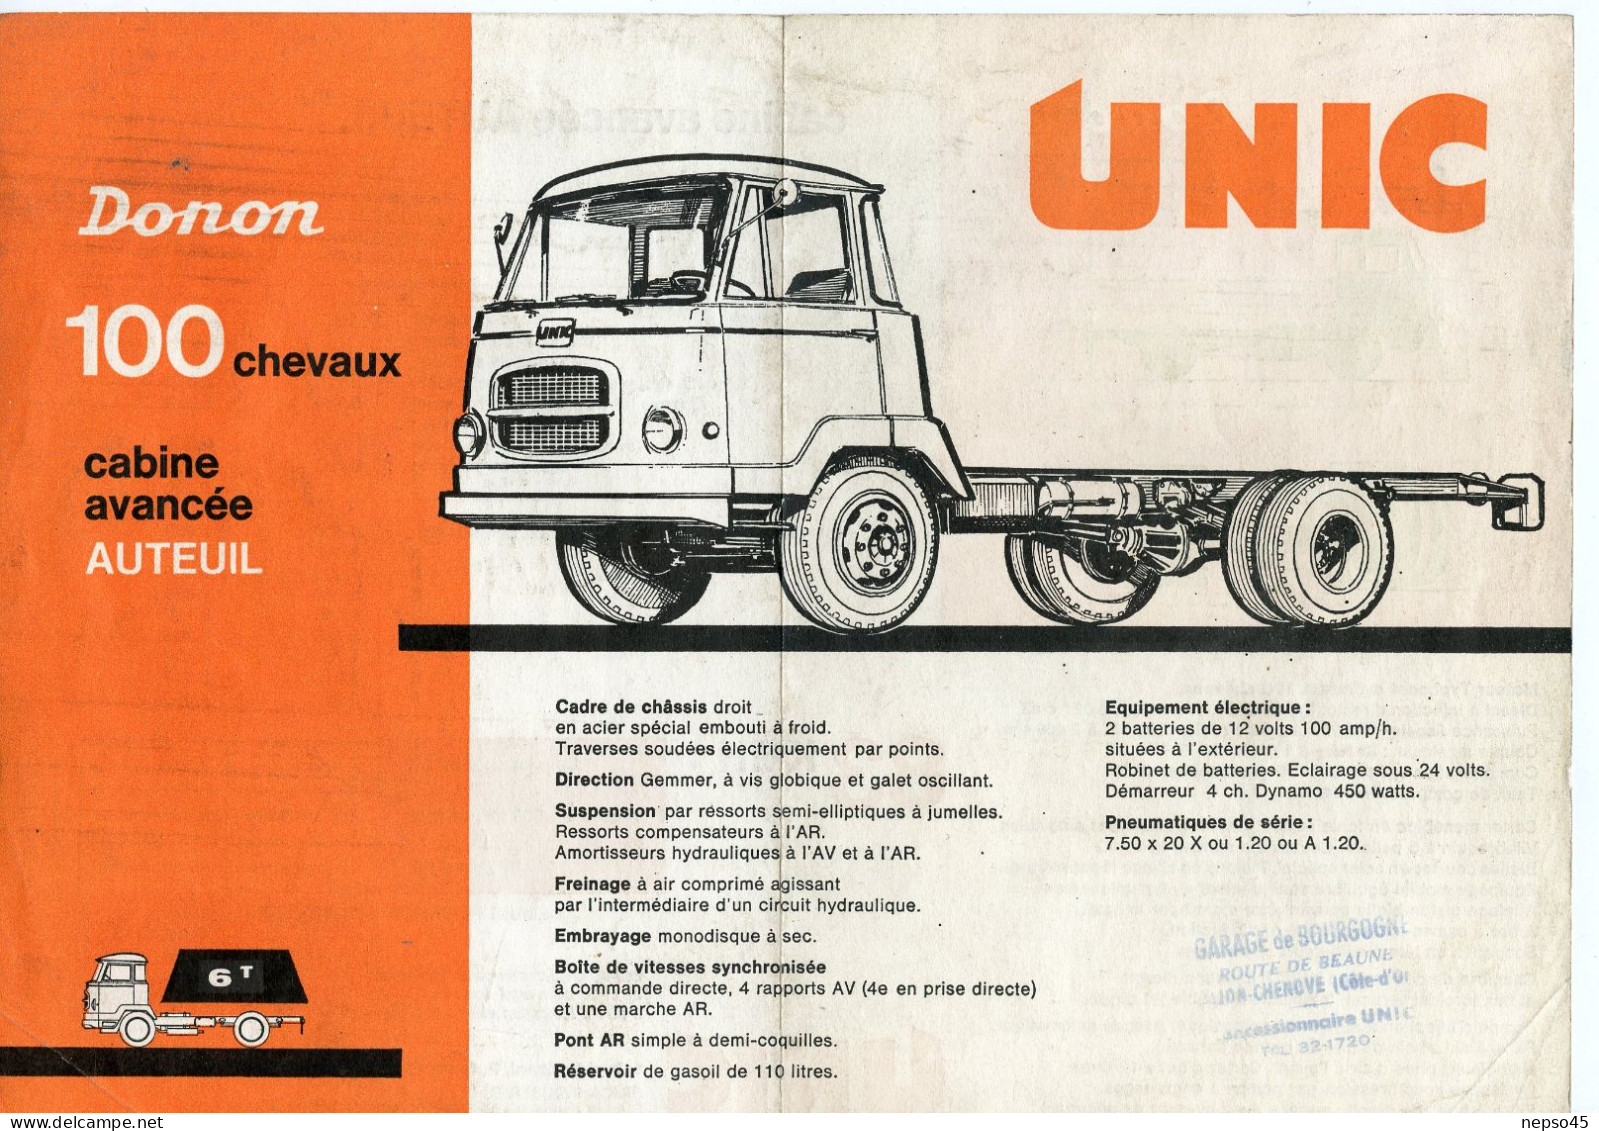 Prospectus Publicitaire.Camion Unic Donon 100 Chevaux Cabine Avancée Auteuil.Garage De Bourgogne.Dijon-Chenove. - Camions